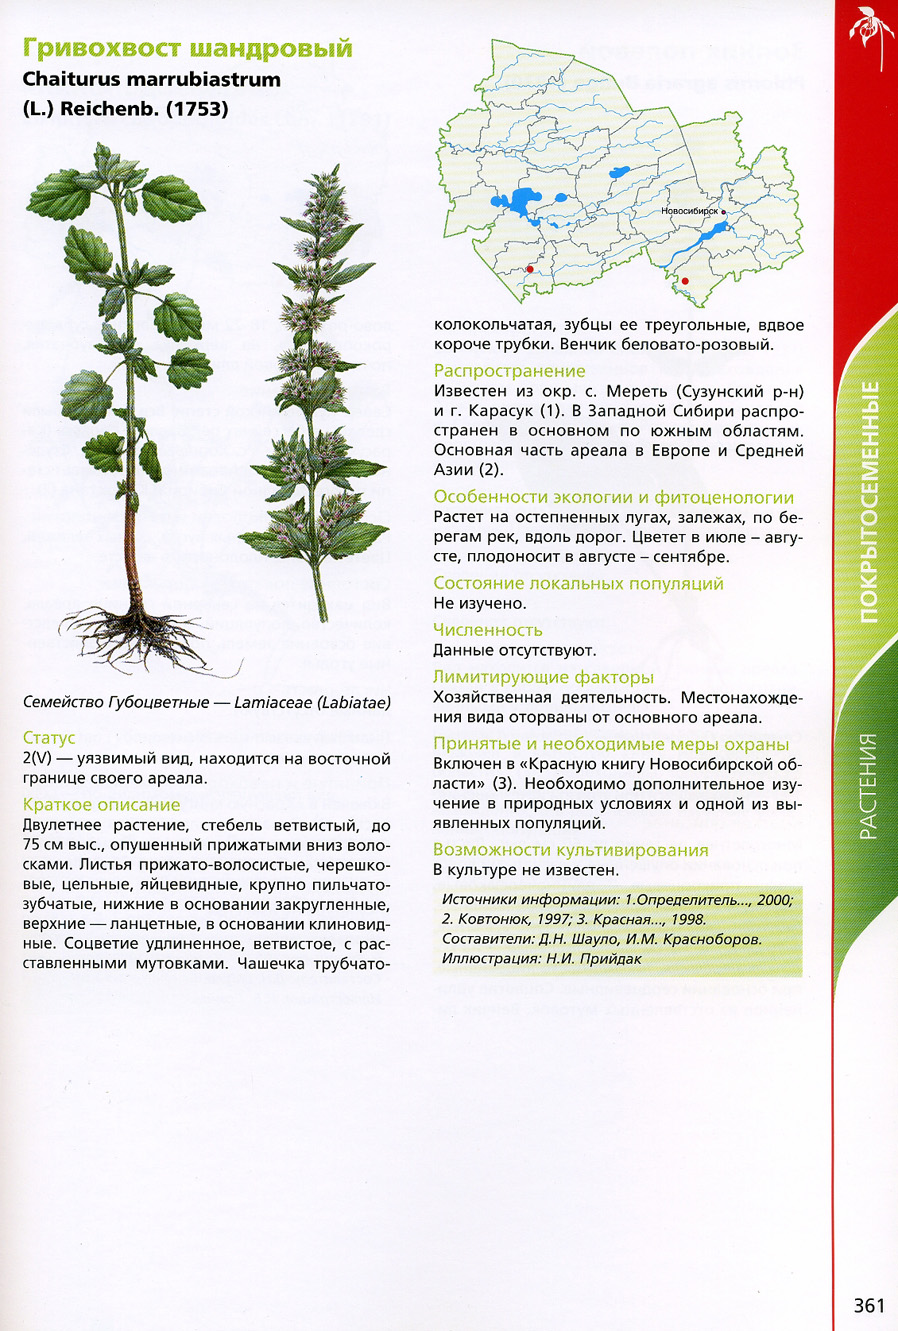 Новосибирская красная книга растения